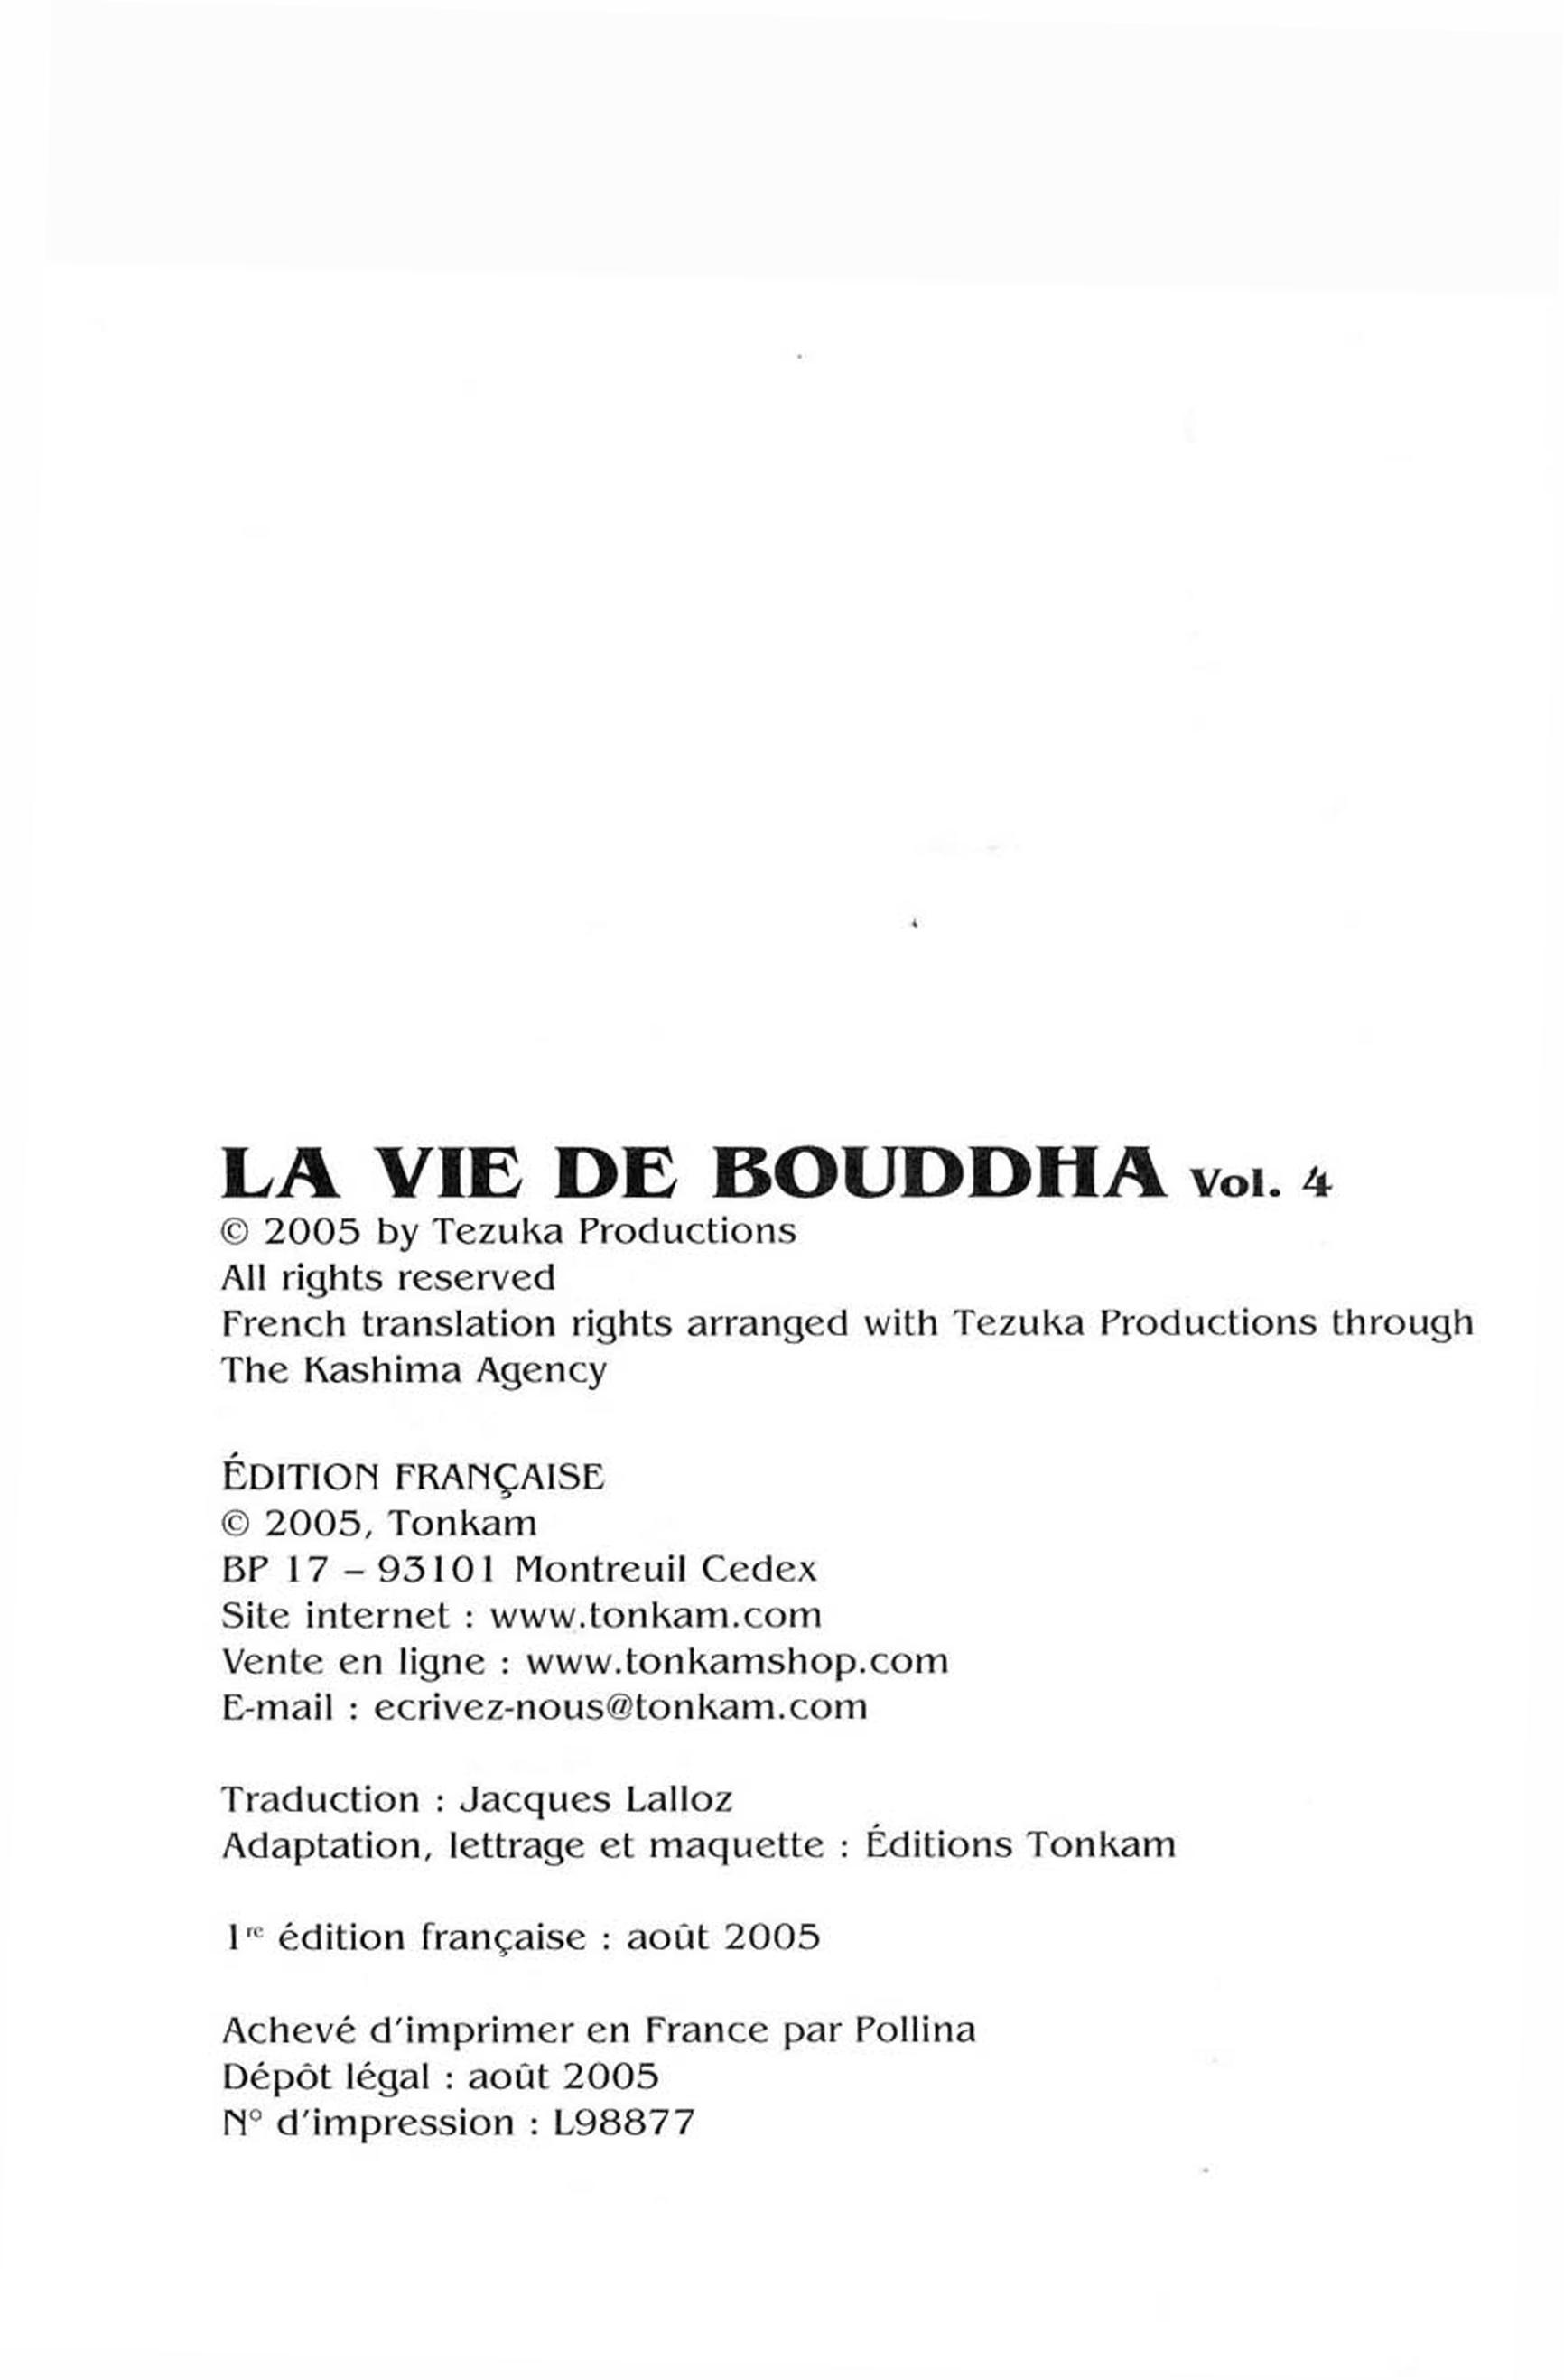 LA vie de bouddha tome 40205.jpg